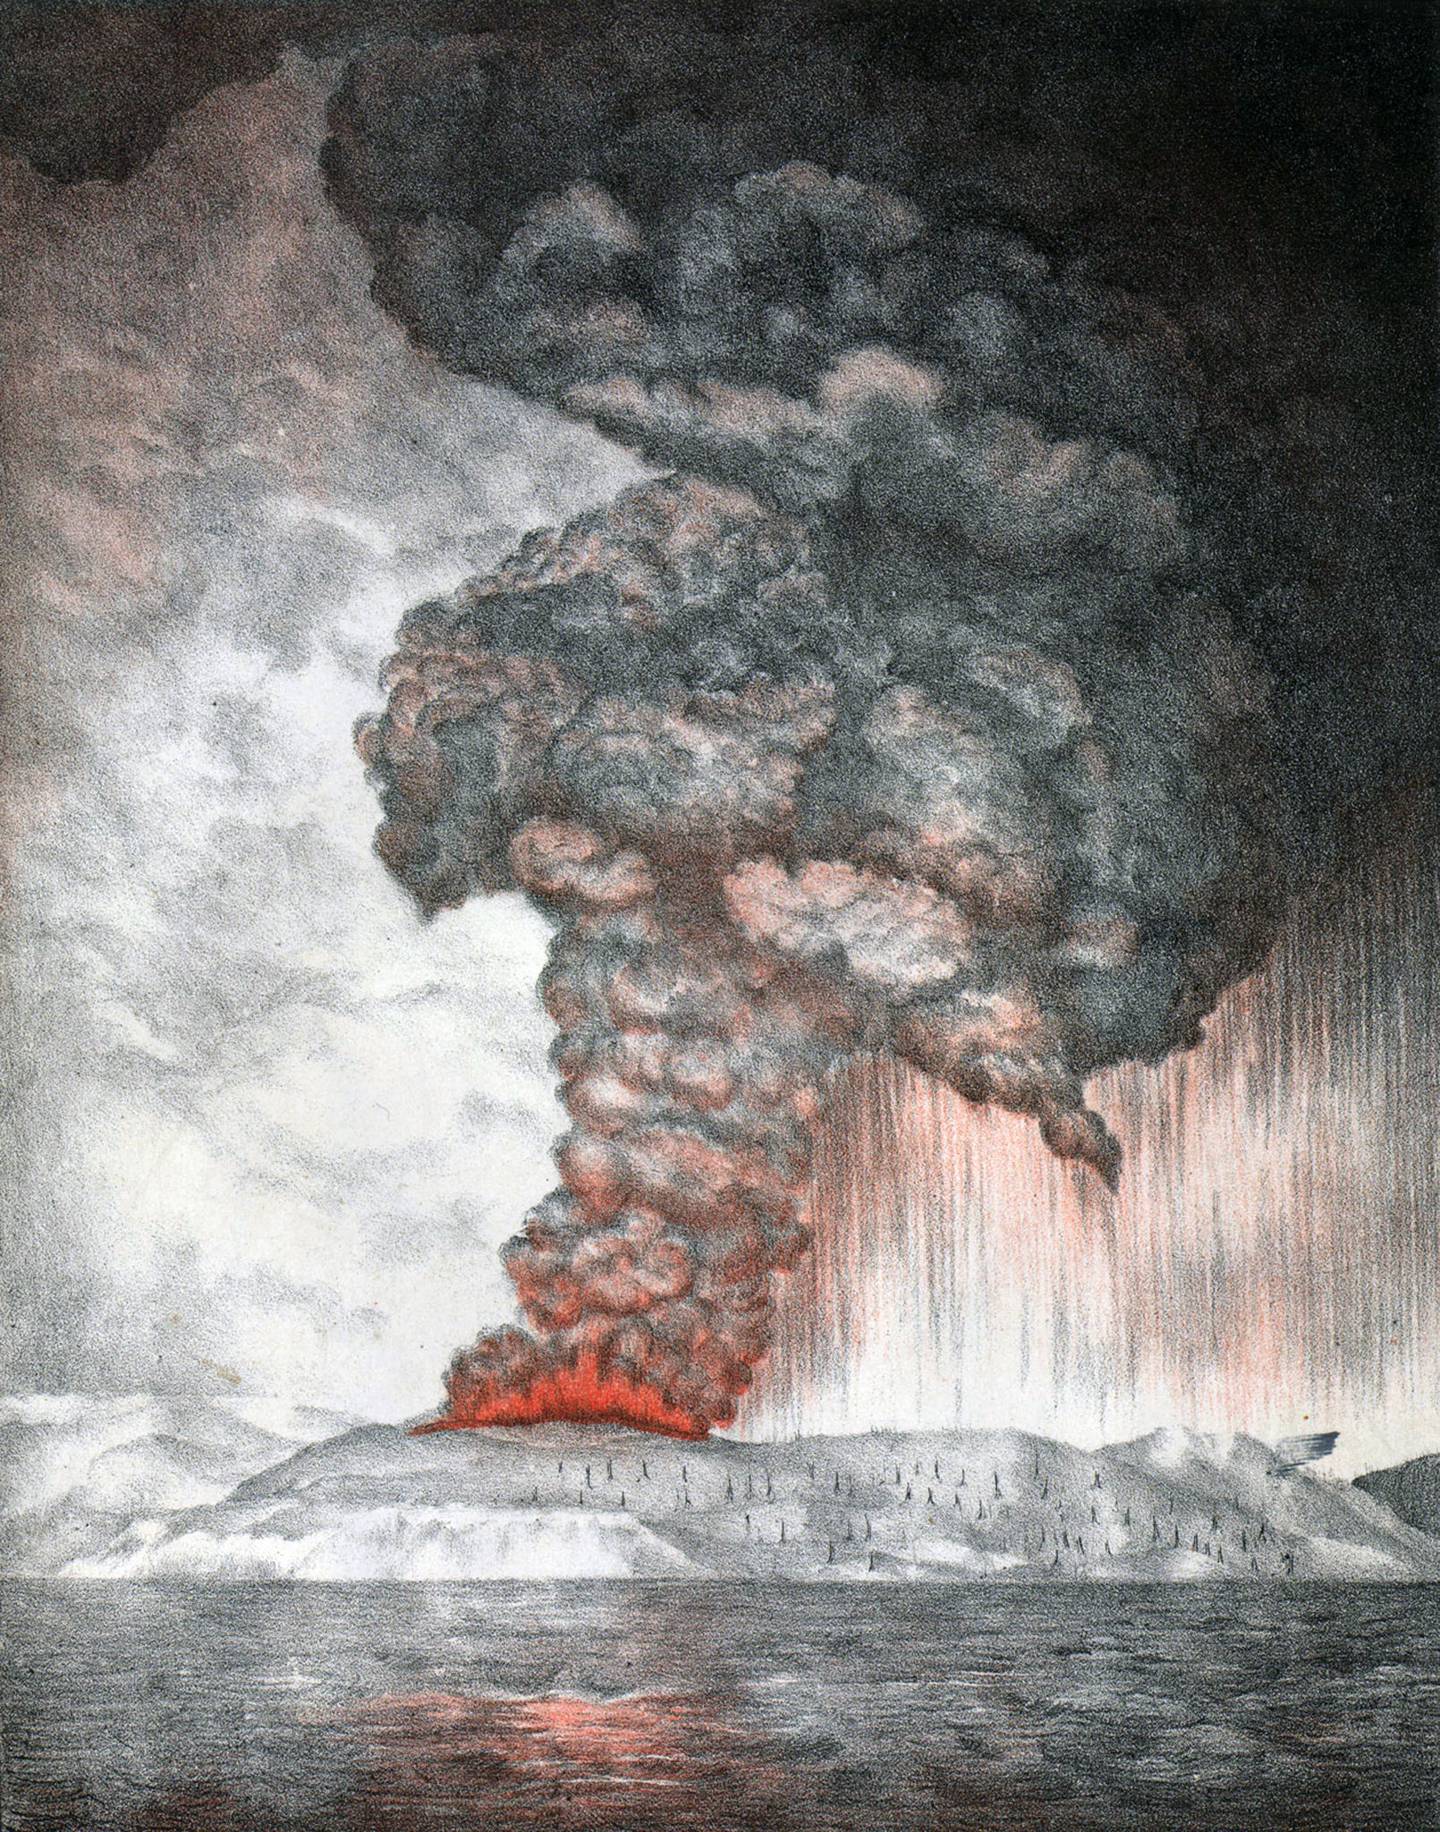 Ilustración de una de las primeras erupciones del Krakatoa, en mayo de 1883.